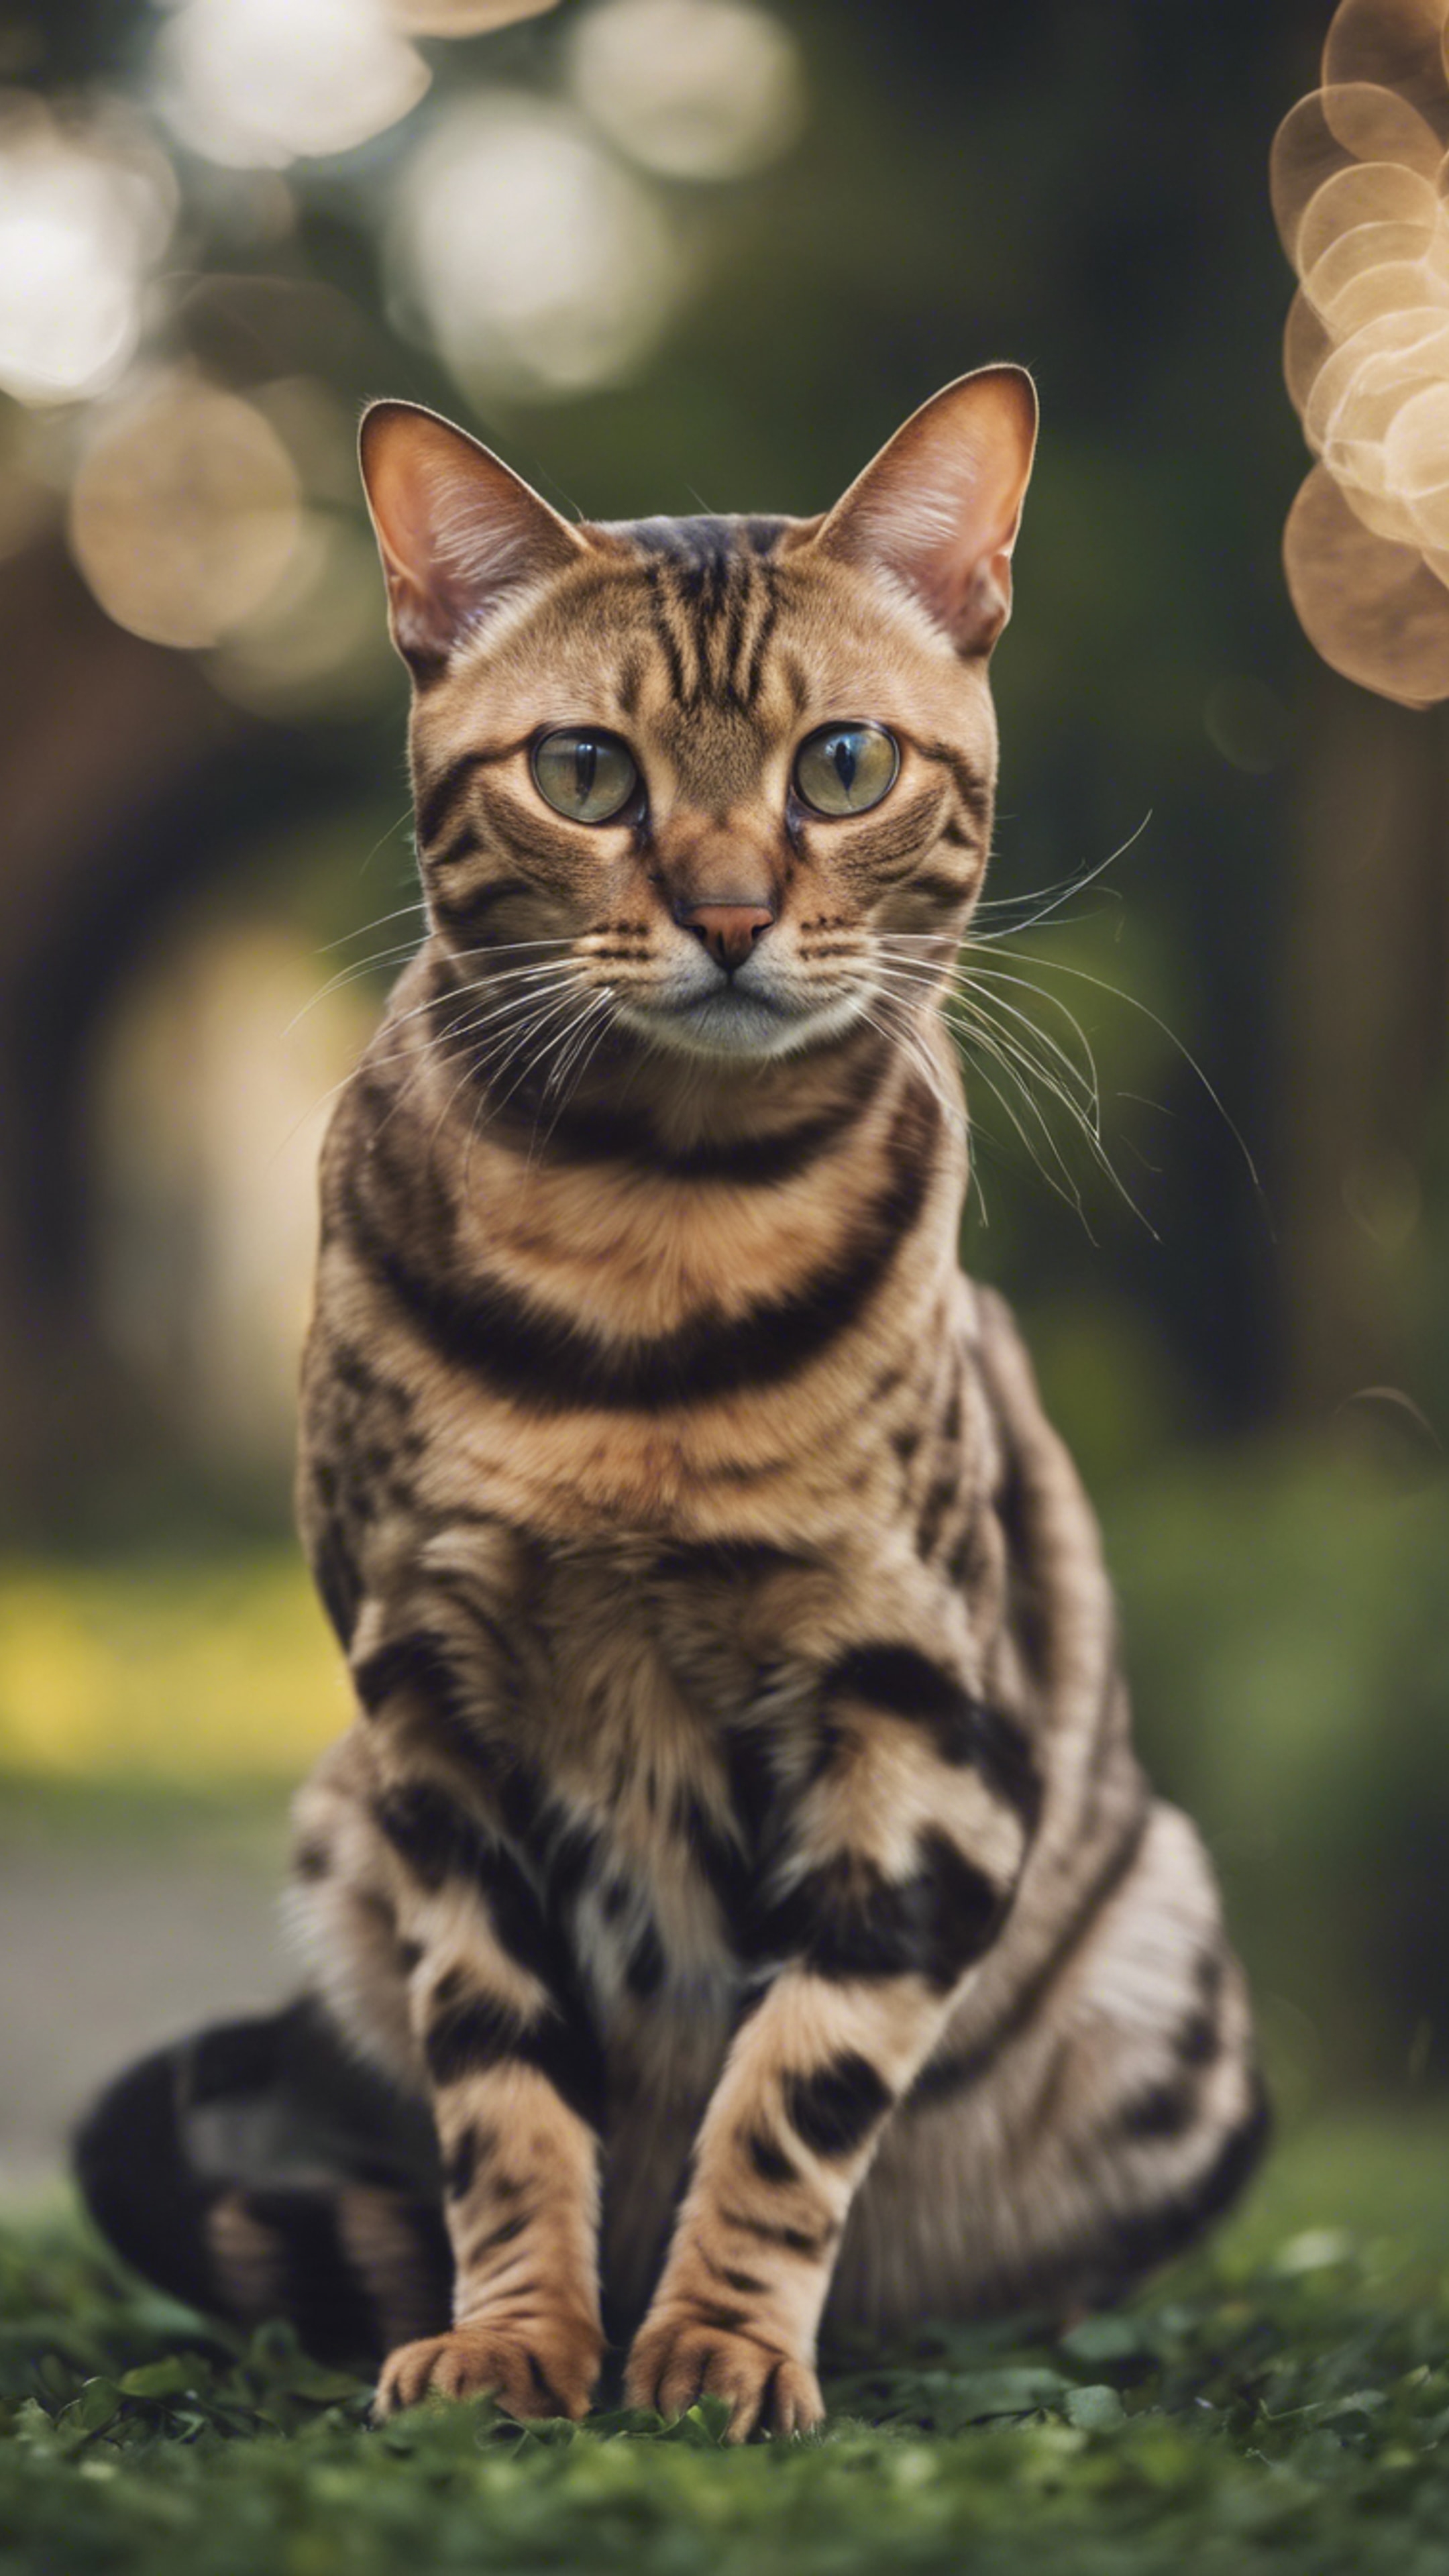 A sleek, aristocratic Bengal cat royally ignoring a mouse scampering by. Обои[9f7ab84a7c6b485a8696]